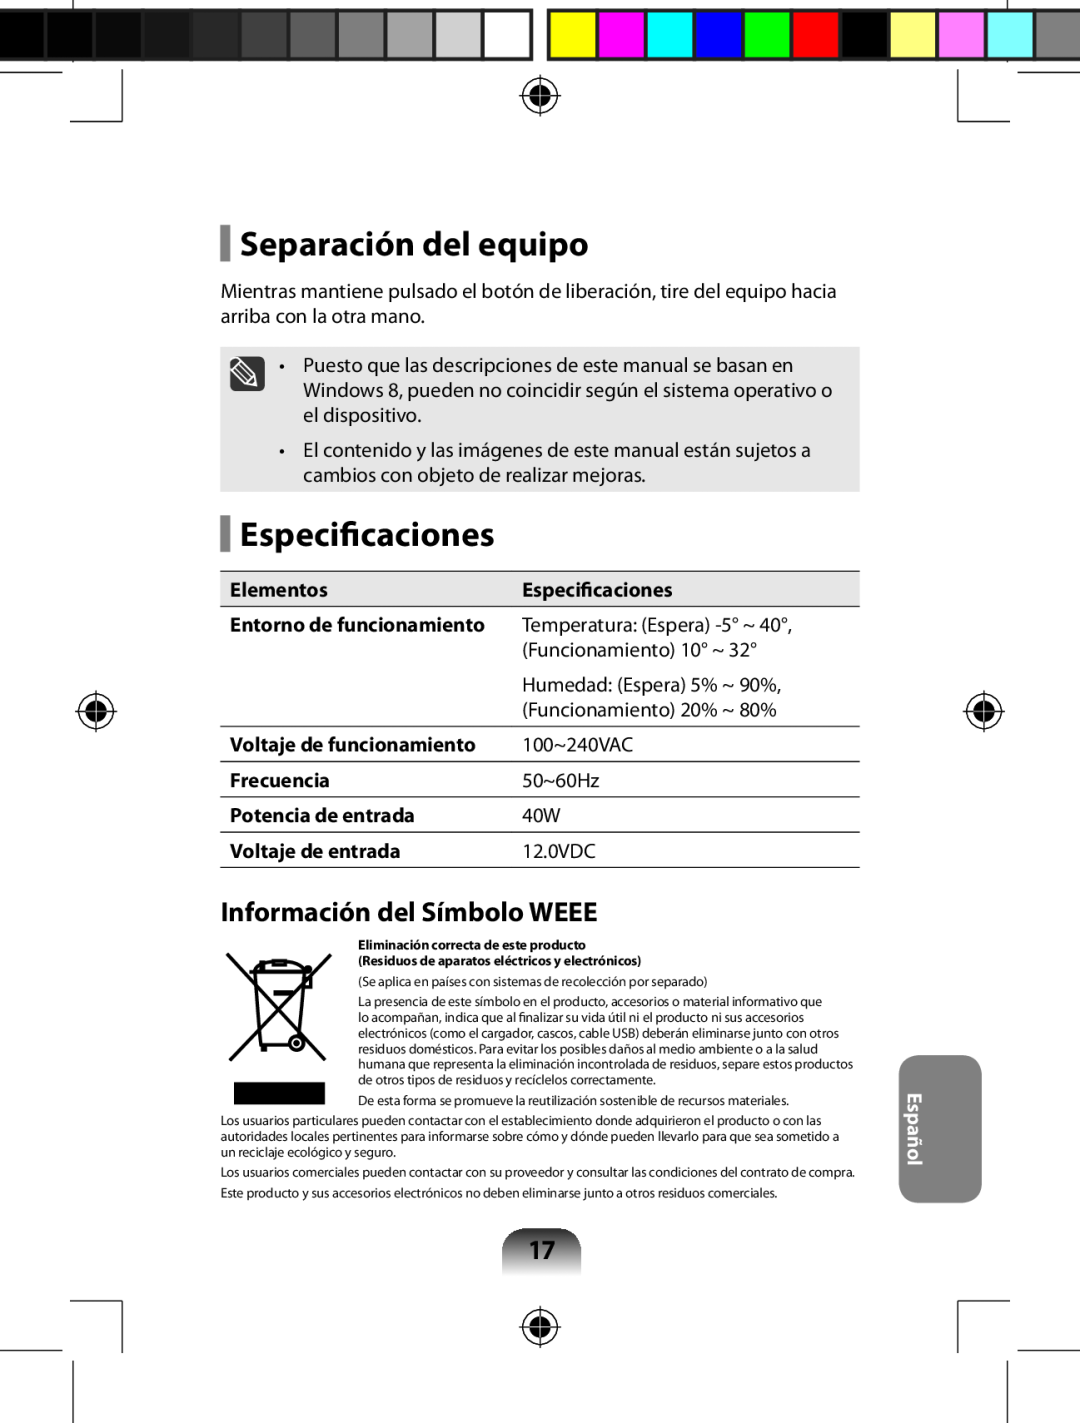 Samsung AA-RD7NMKD/US, AARD7NSDOUS manual Separación del equipo, Especificaciones, Información del Símbolo WEEE, Español 